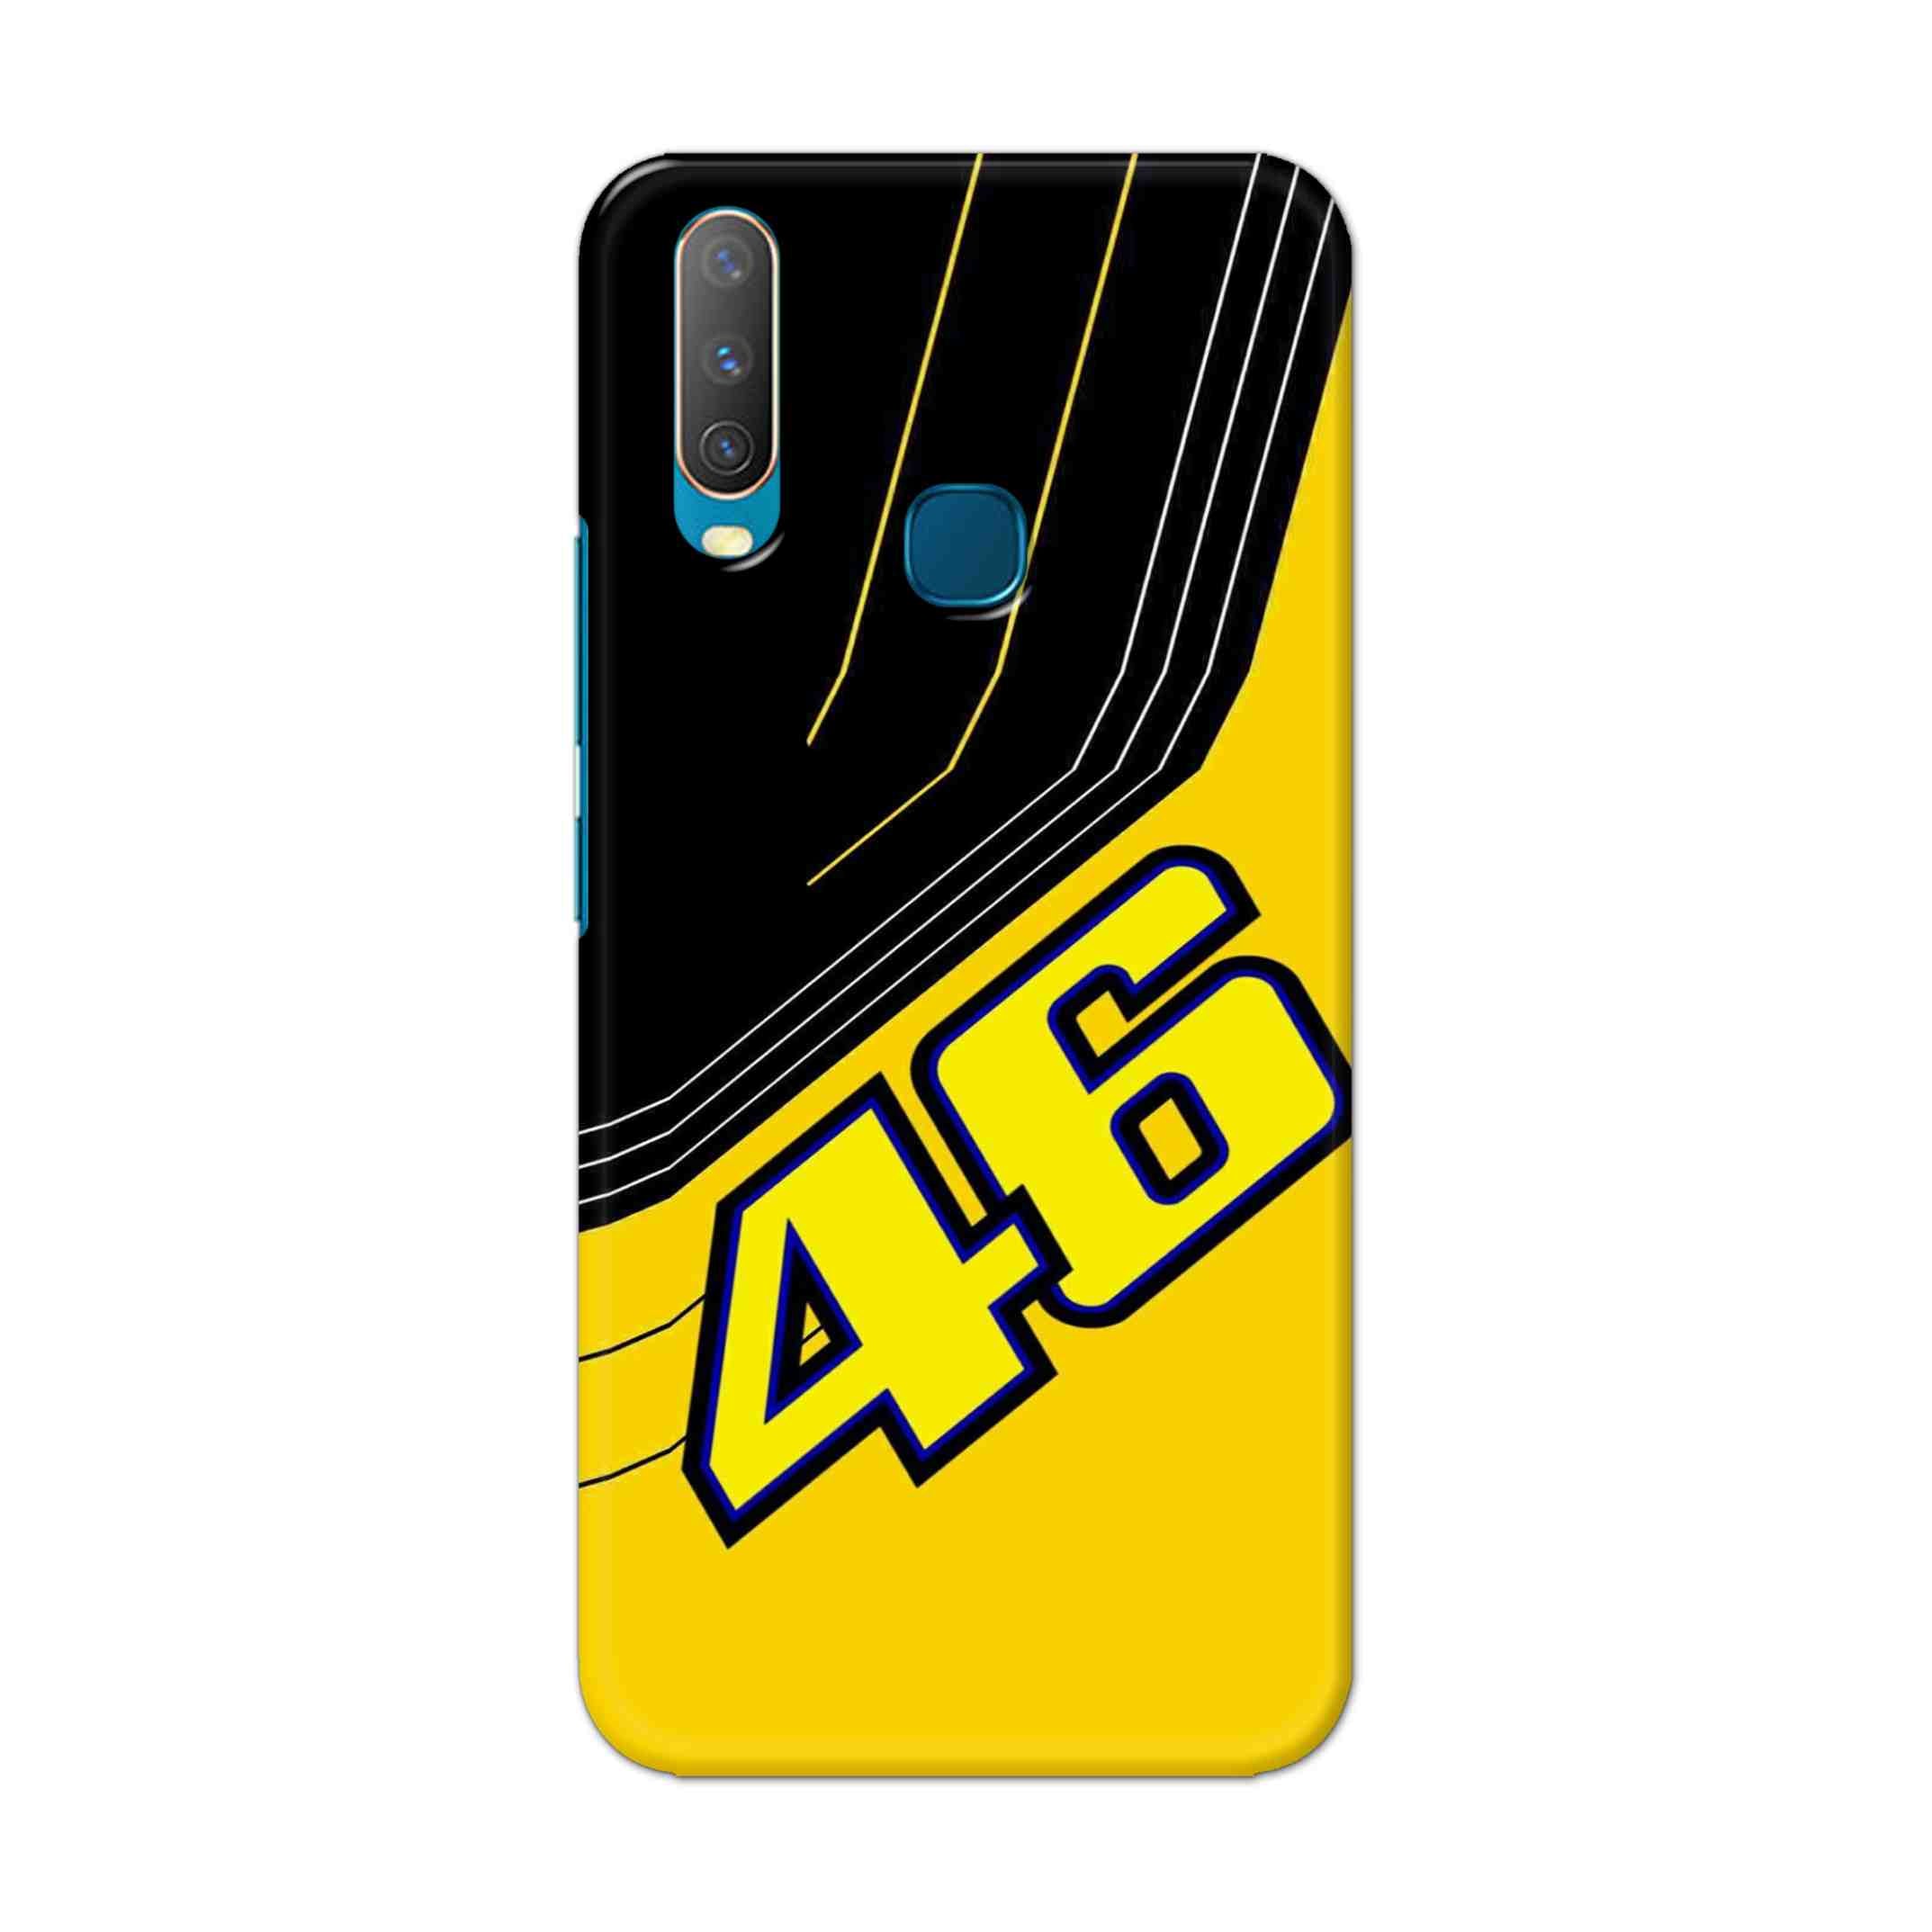 Buy 46 Hard Back Mobile Phone Case Cover For Vivo Y17 / U10 Online